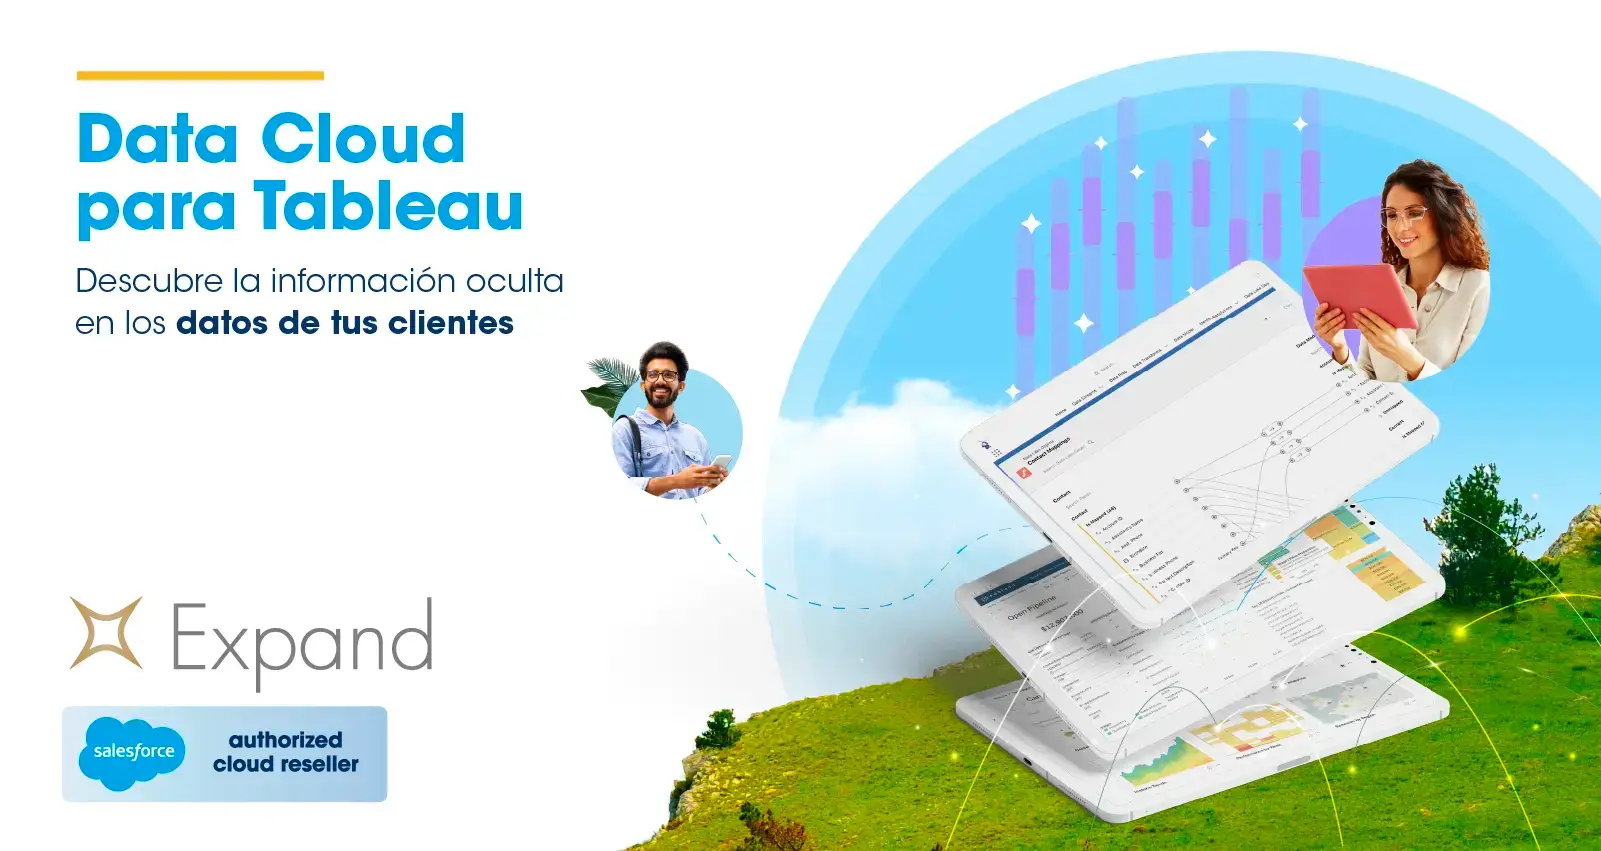 Data Cloud para Tableau: Descubre la información oculta en los datos de tus clientes